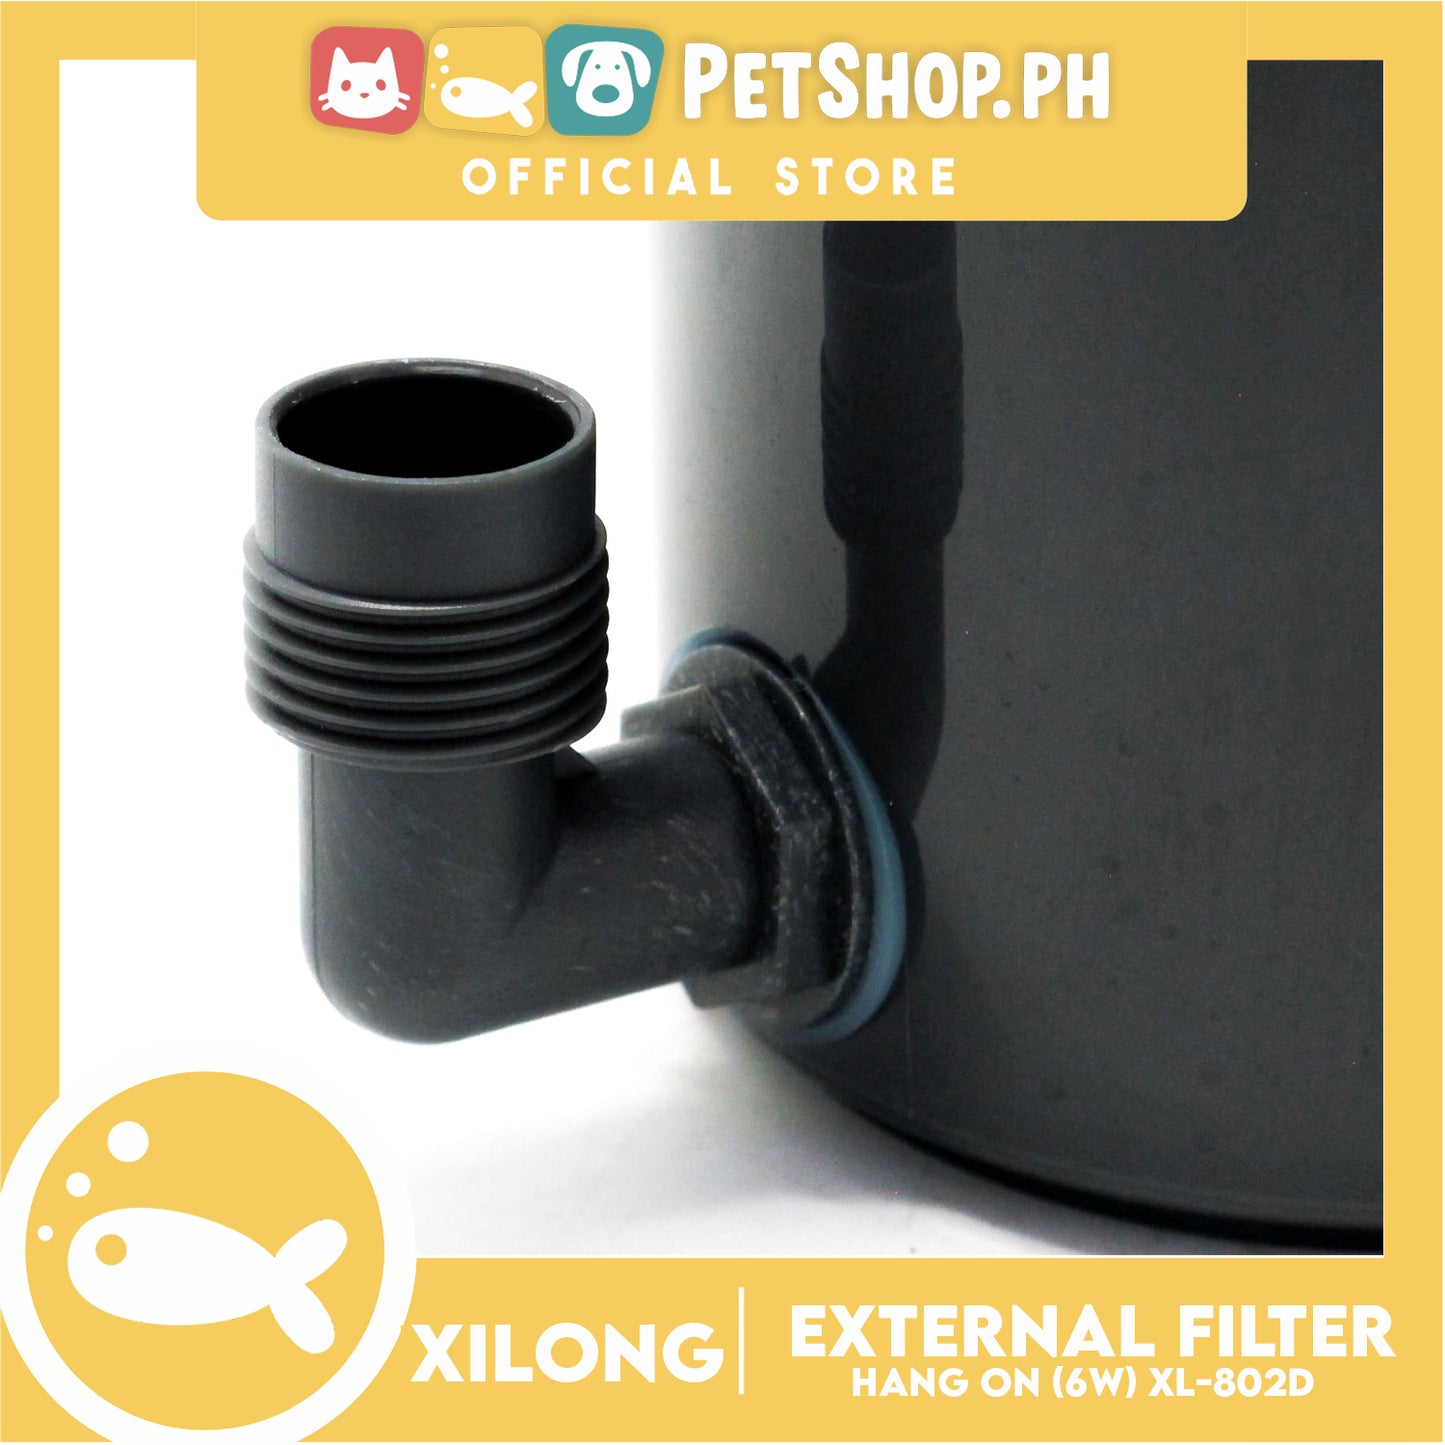 XL-802D Hang On External Filter